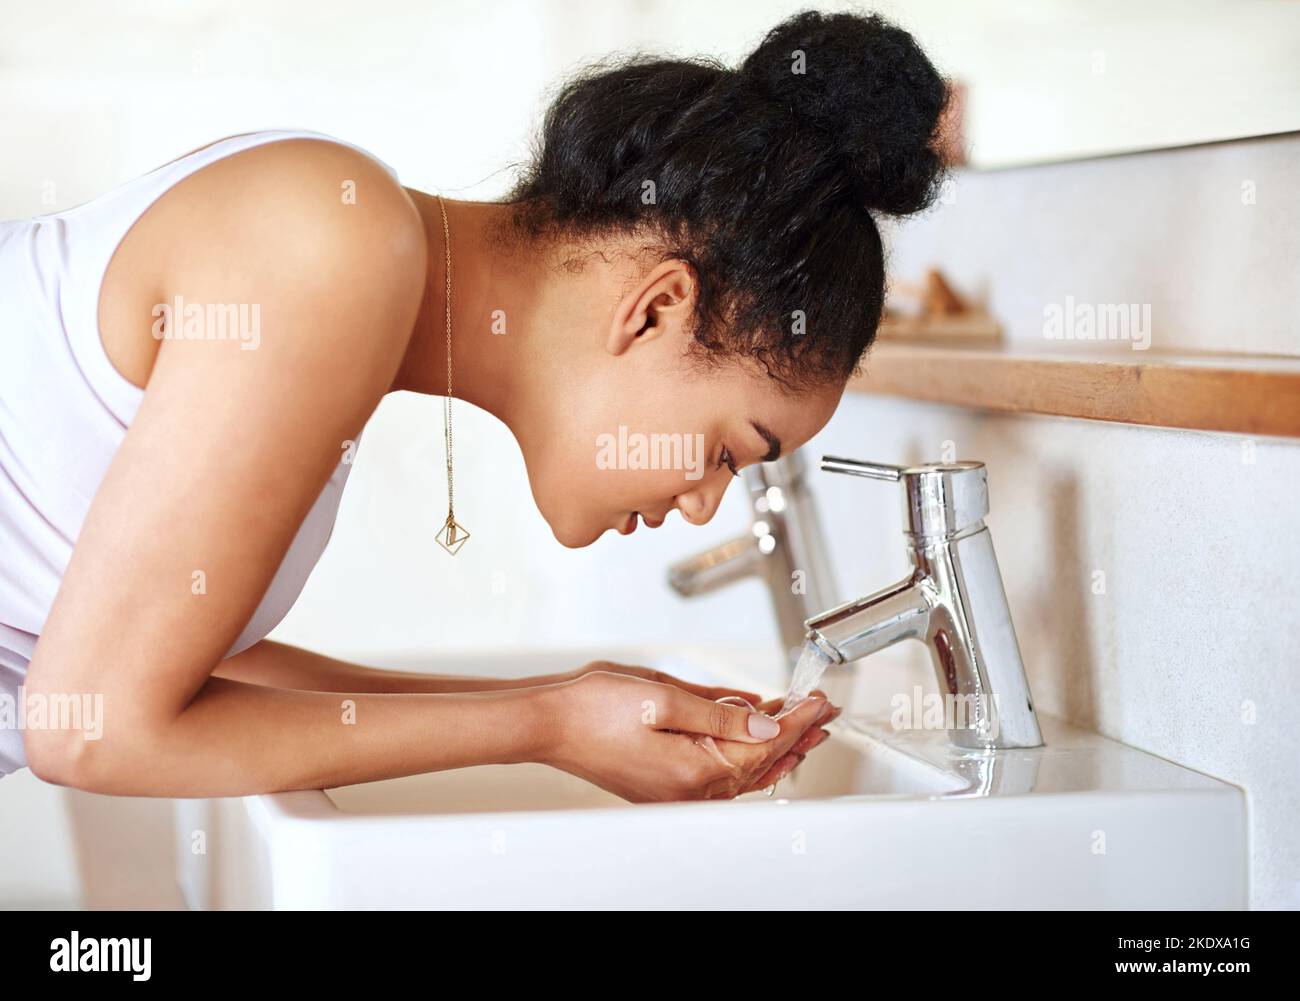 Halten Sie sich an eine Routine, die für Ihre Haut funktioniert. Eine junge Frau waschen ihr Gesicht im Badezimmer. Stockfoto